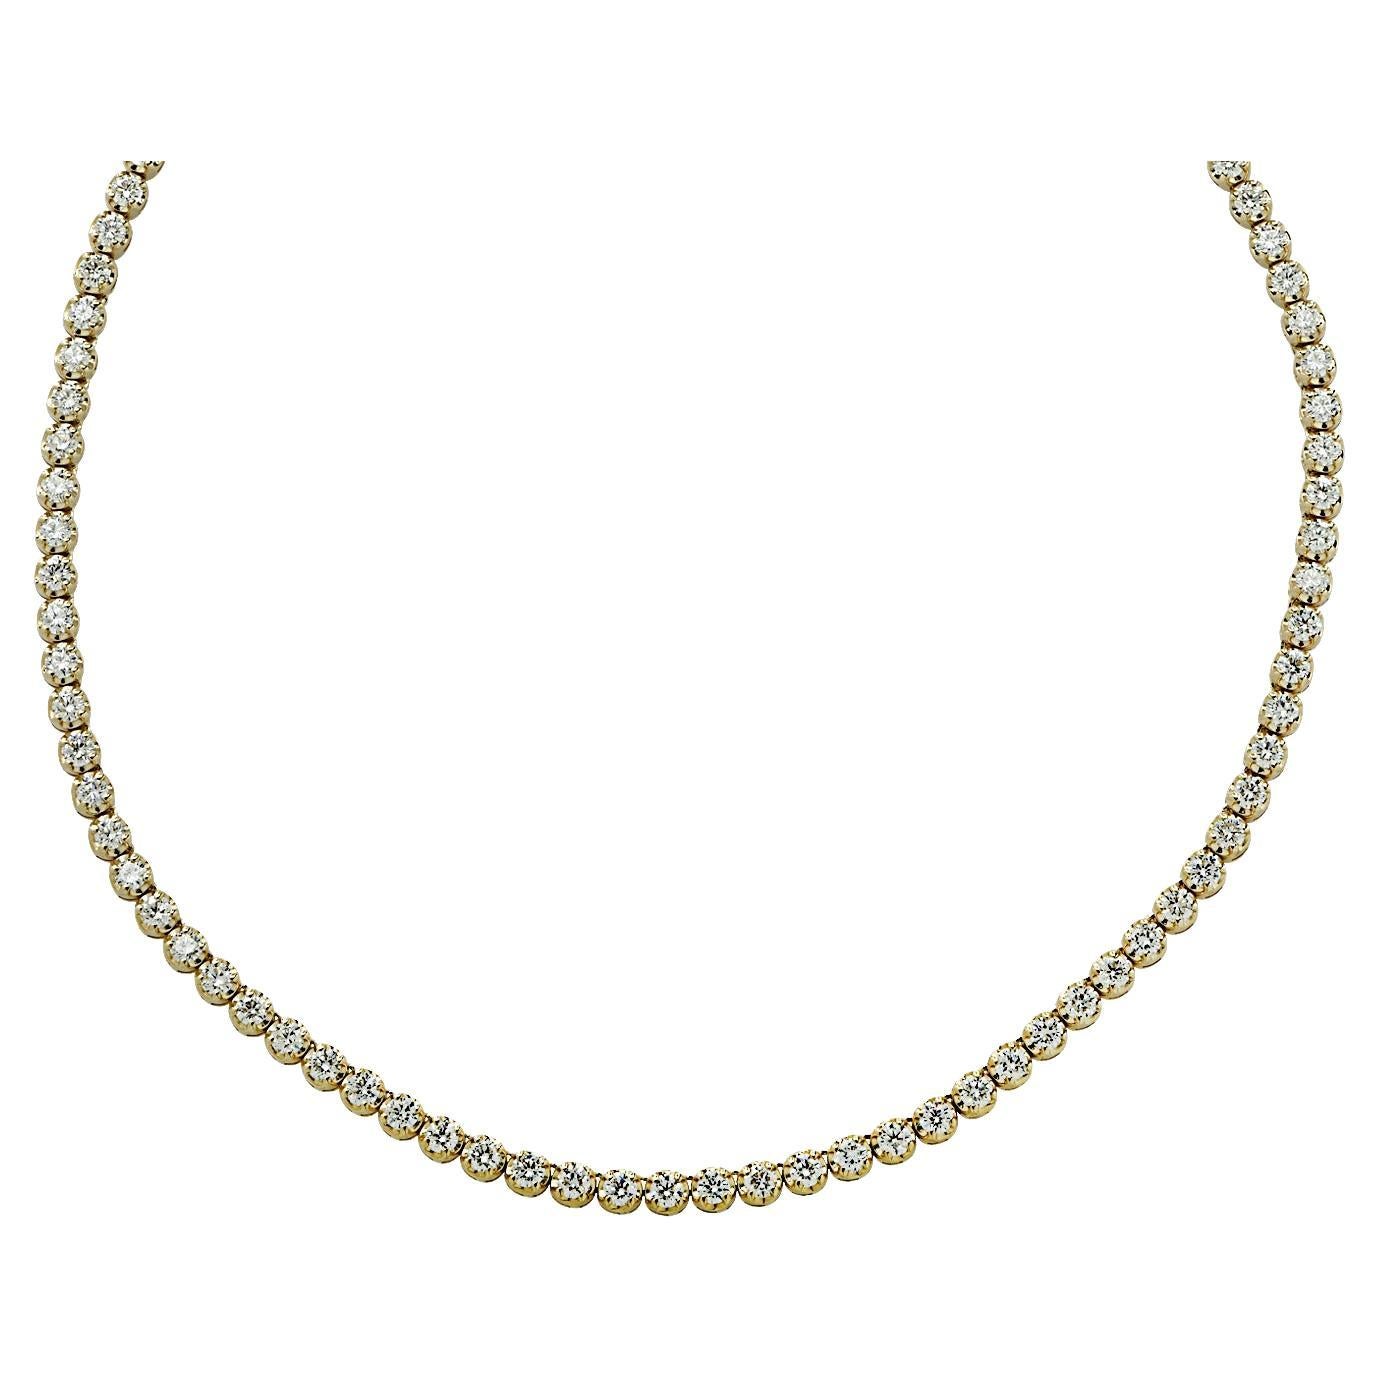 Tennis-Halskette mit lebhaften 11,17 Karat Diamanten in gerader Linie